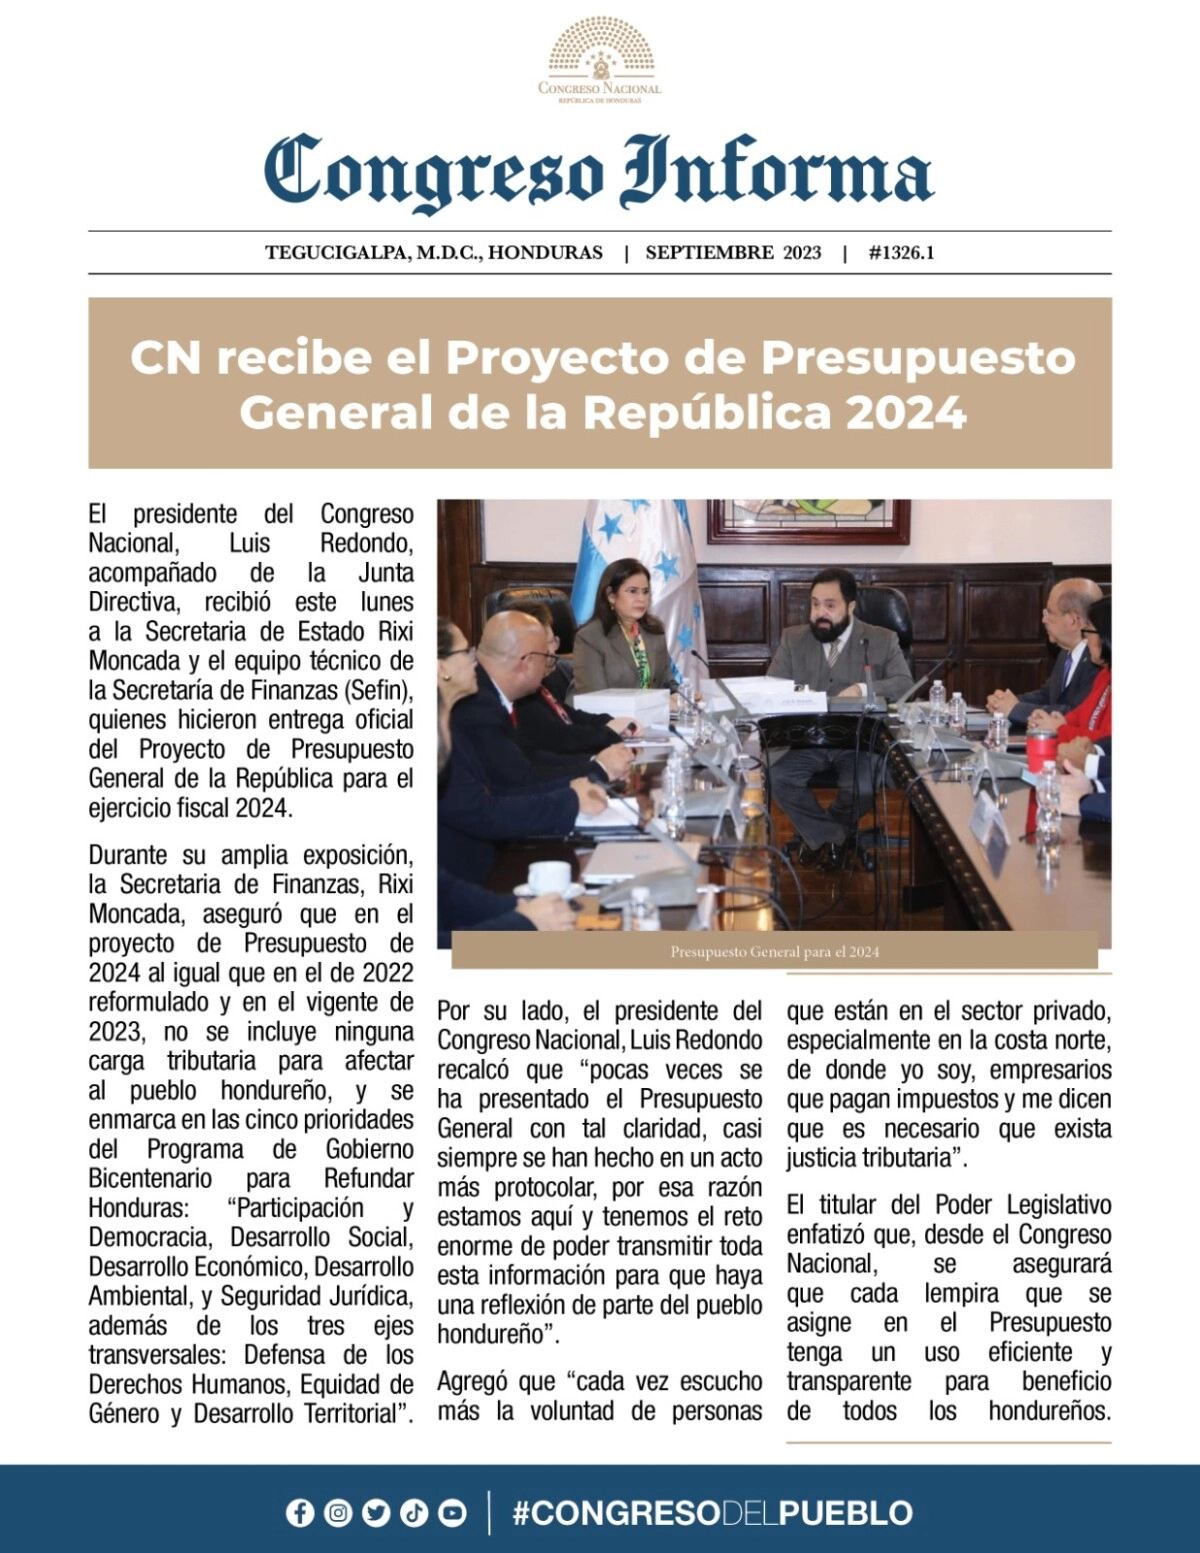 Congreso Nacional recibe el Proyecto de Presupuesto General de la República 2024